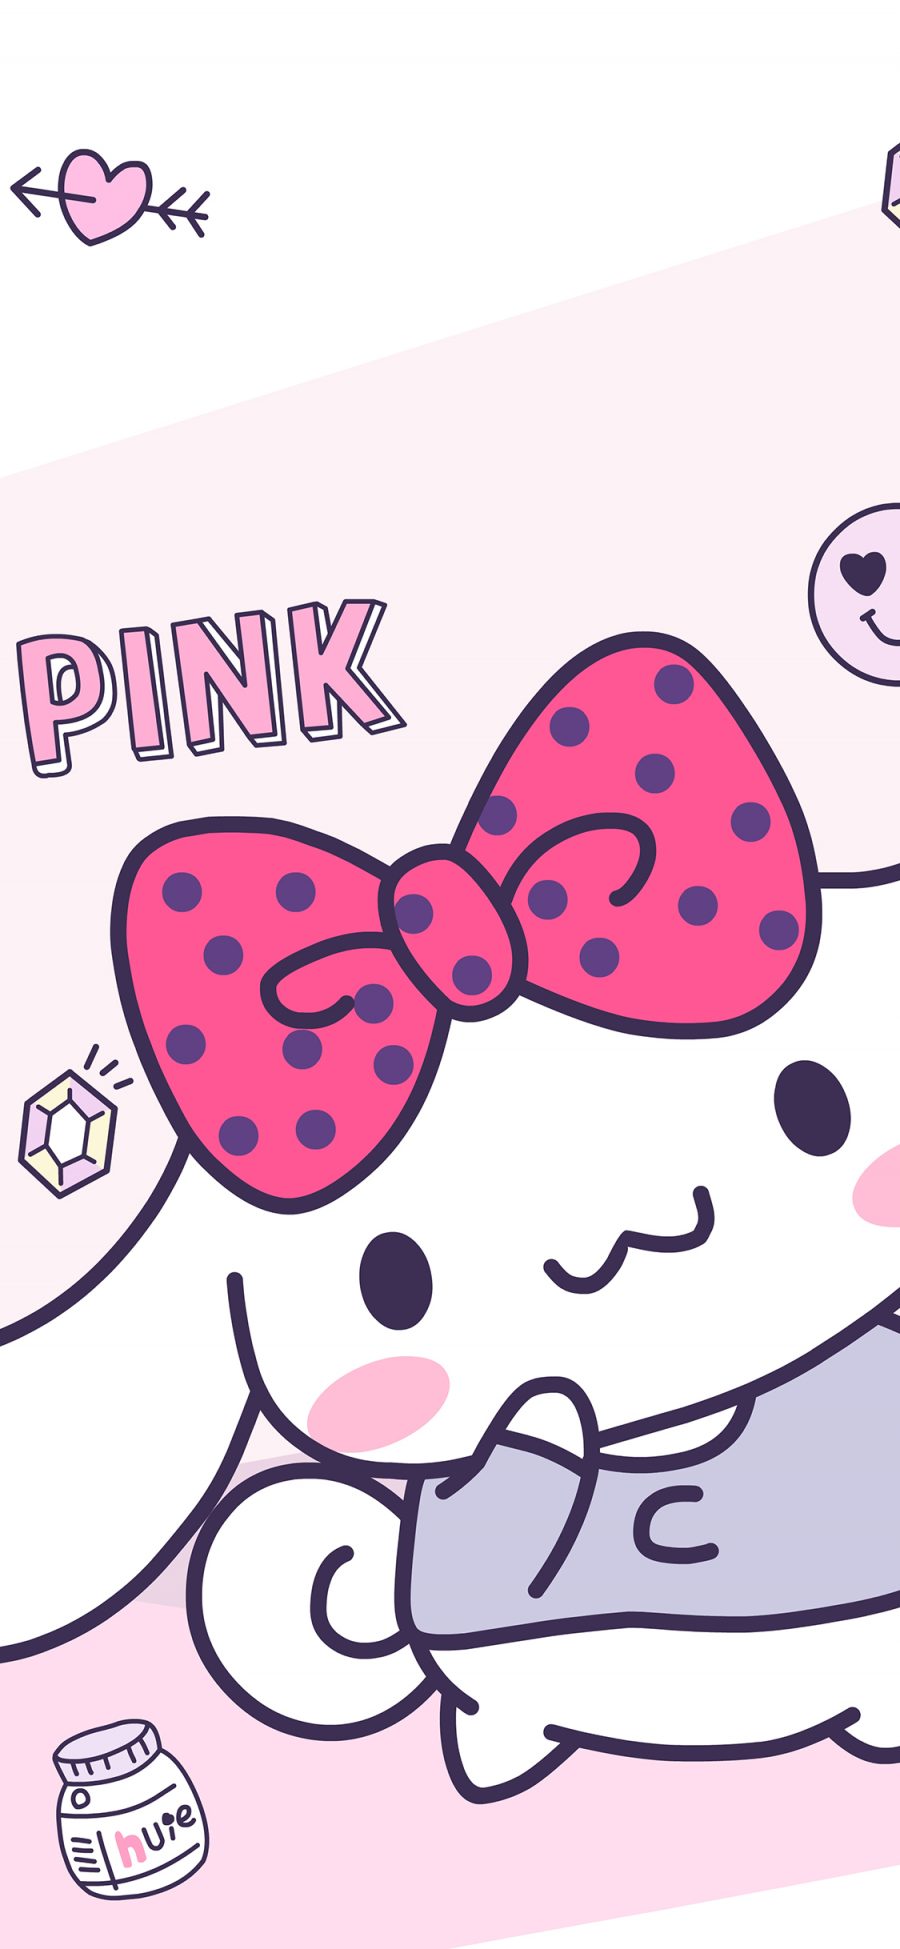 [2436×1125]玉桂狗 蝴蝶结 卡通 粉色 pink 可爱 少女心 苹果手机动漫壁纸图片